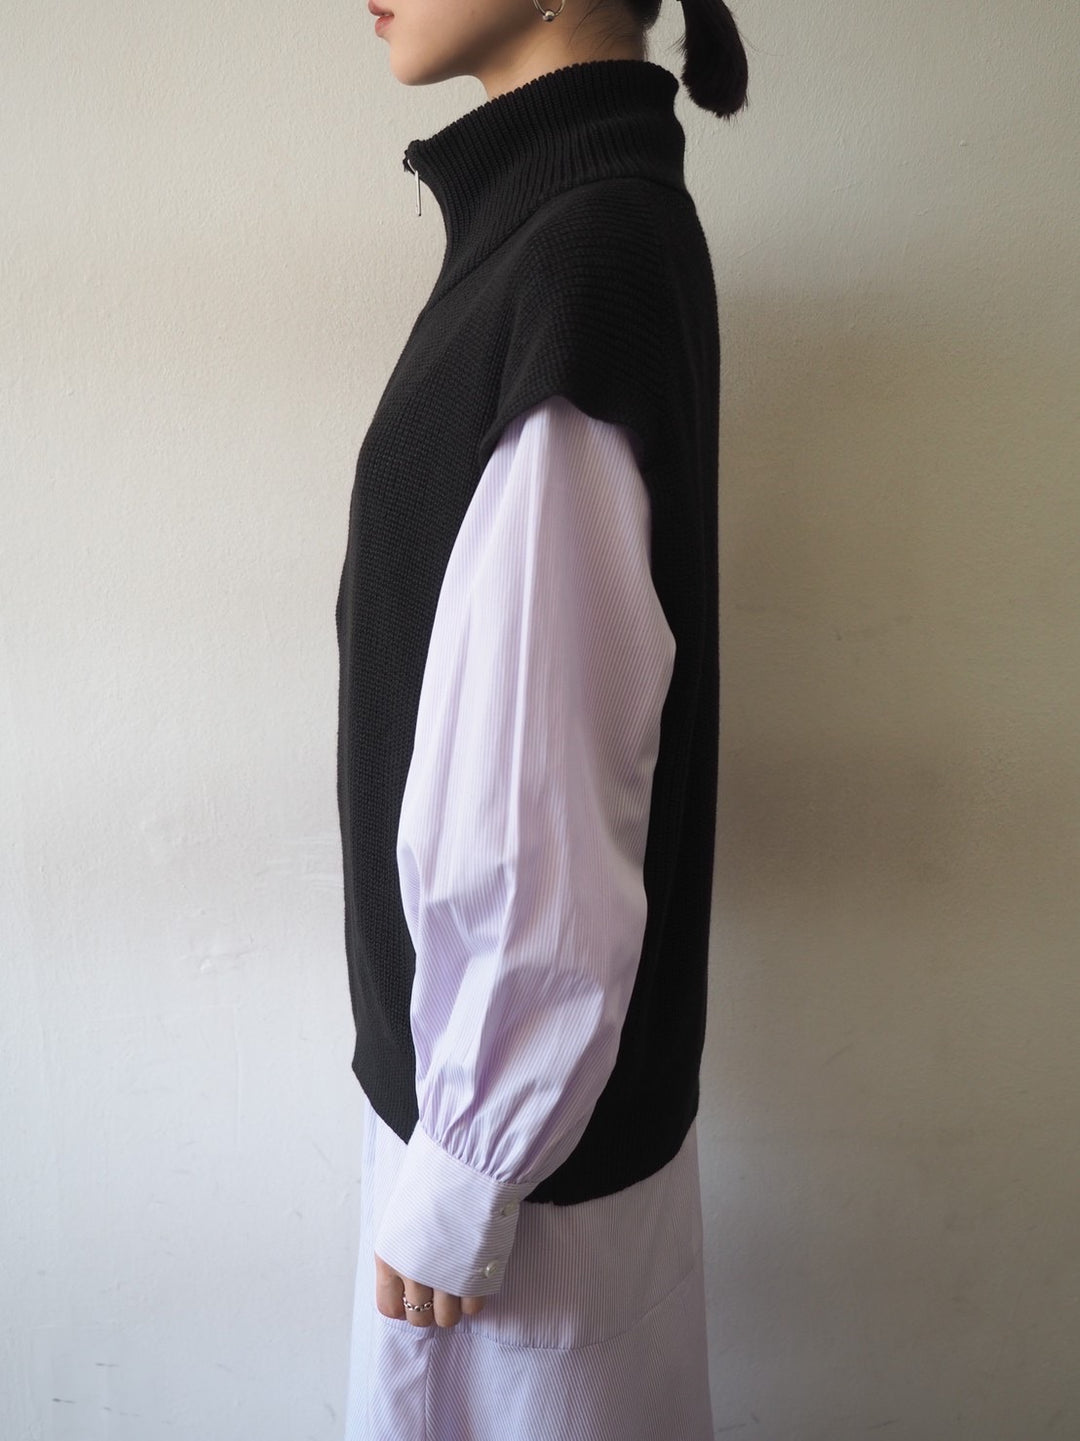 [Ready to ship] High neck zip knit vest/black